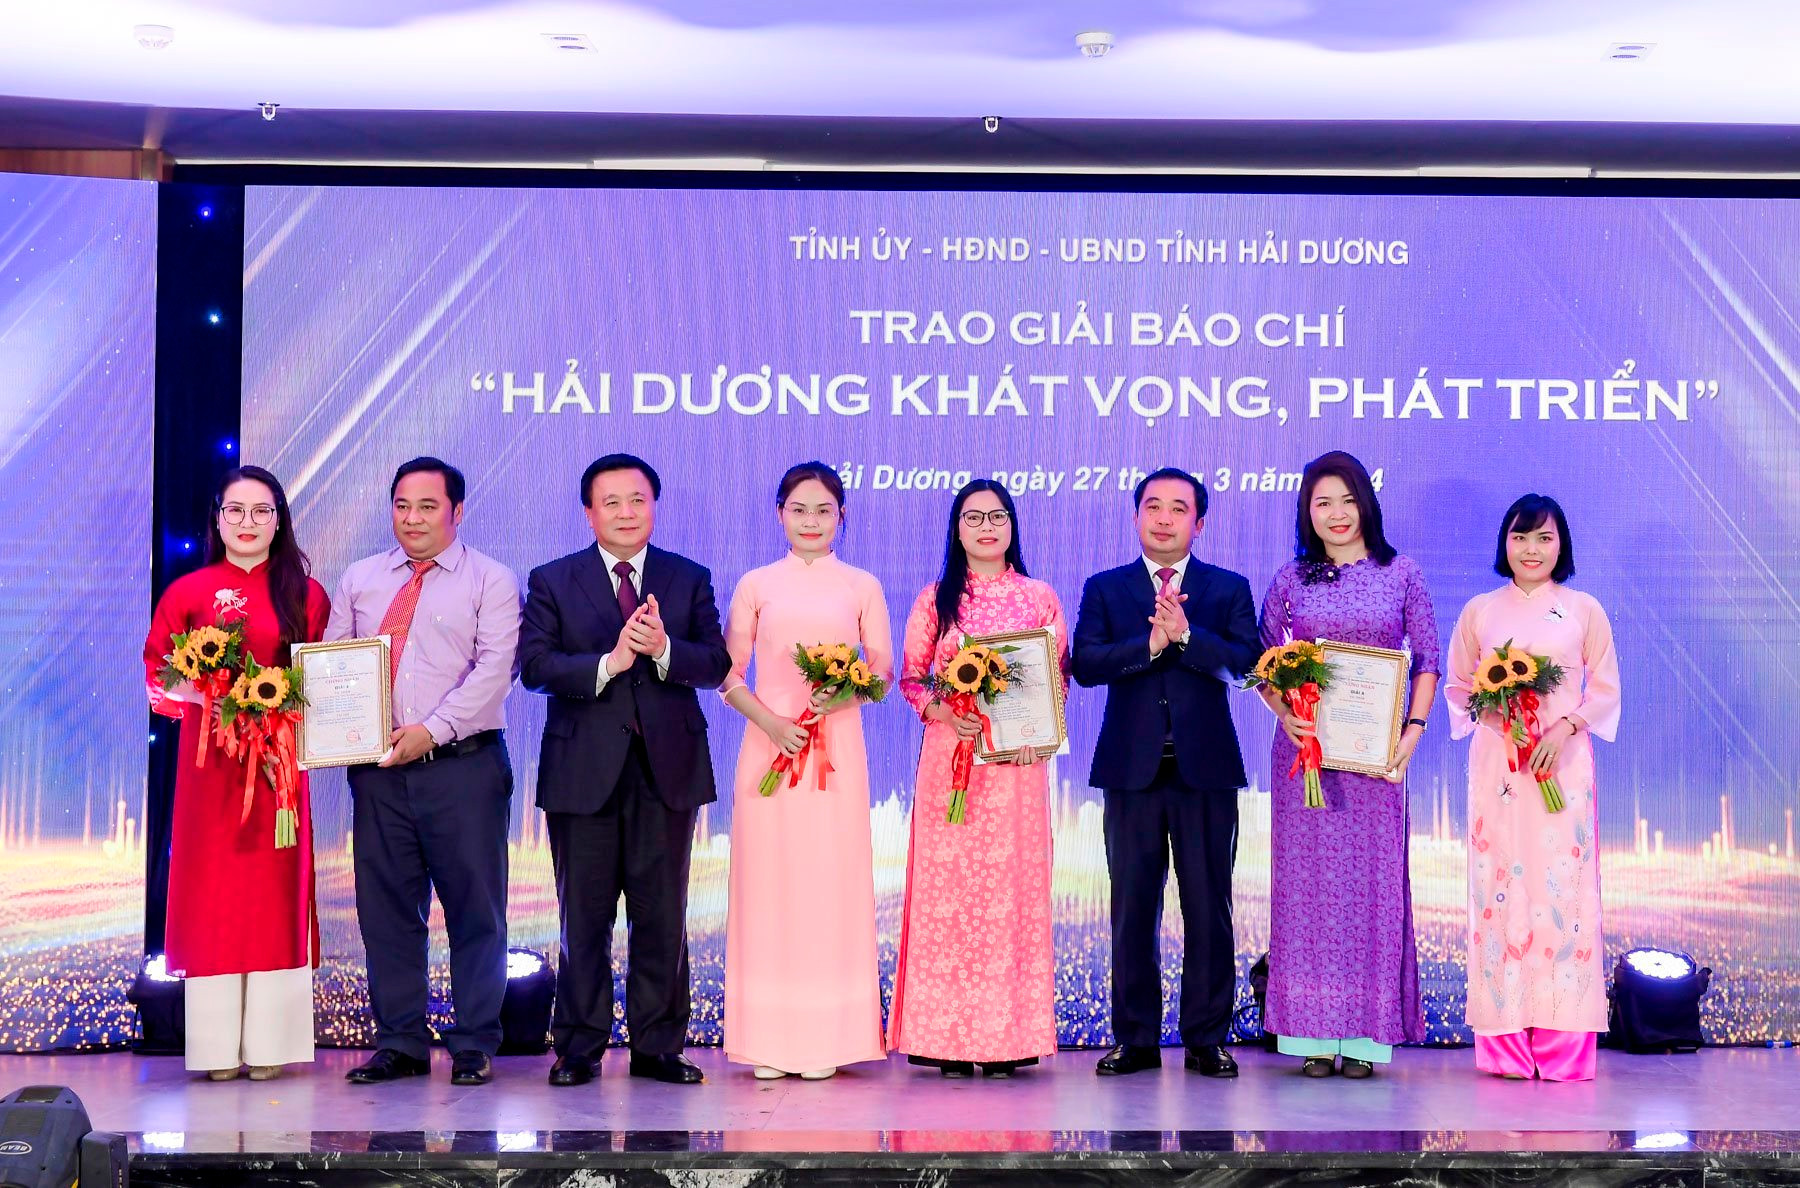 Ông Nguyễn Xuân Thắng, Giám đốc Học viện Chính trị quốc gia Hồ Chí Minh, Chủ tịch Hội đồng Lý luận Trung ương và ông Trần Đức Thắng, Bí thư Tỉnh ủy Hải Dương trao giải A cho các tác giả.